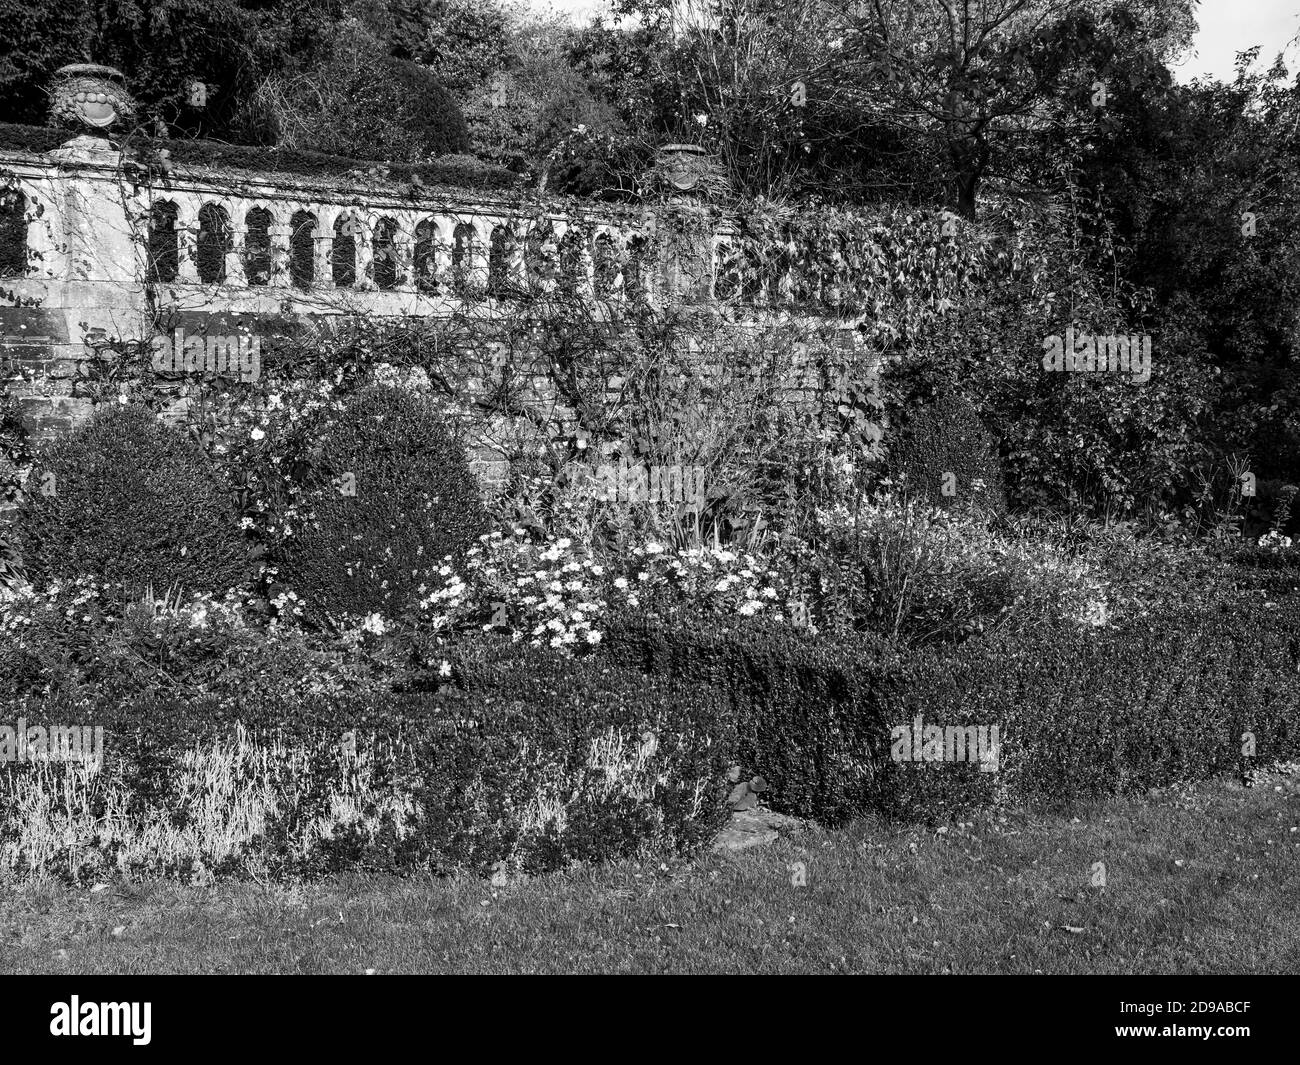 Paesaggio bianco e nero di Country House Gardens, senza tempo, Enfield House Gardens, Enfield, Thale, Berkshire, Inghilterra, Regno Unito, GB. Foto Stock